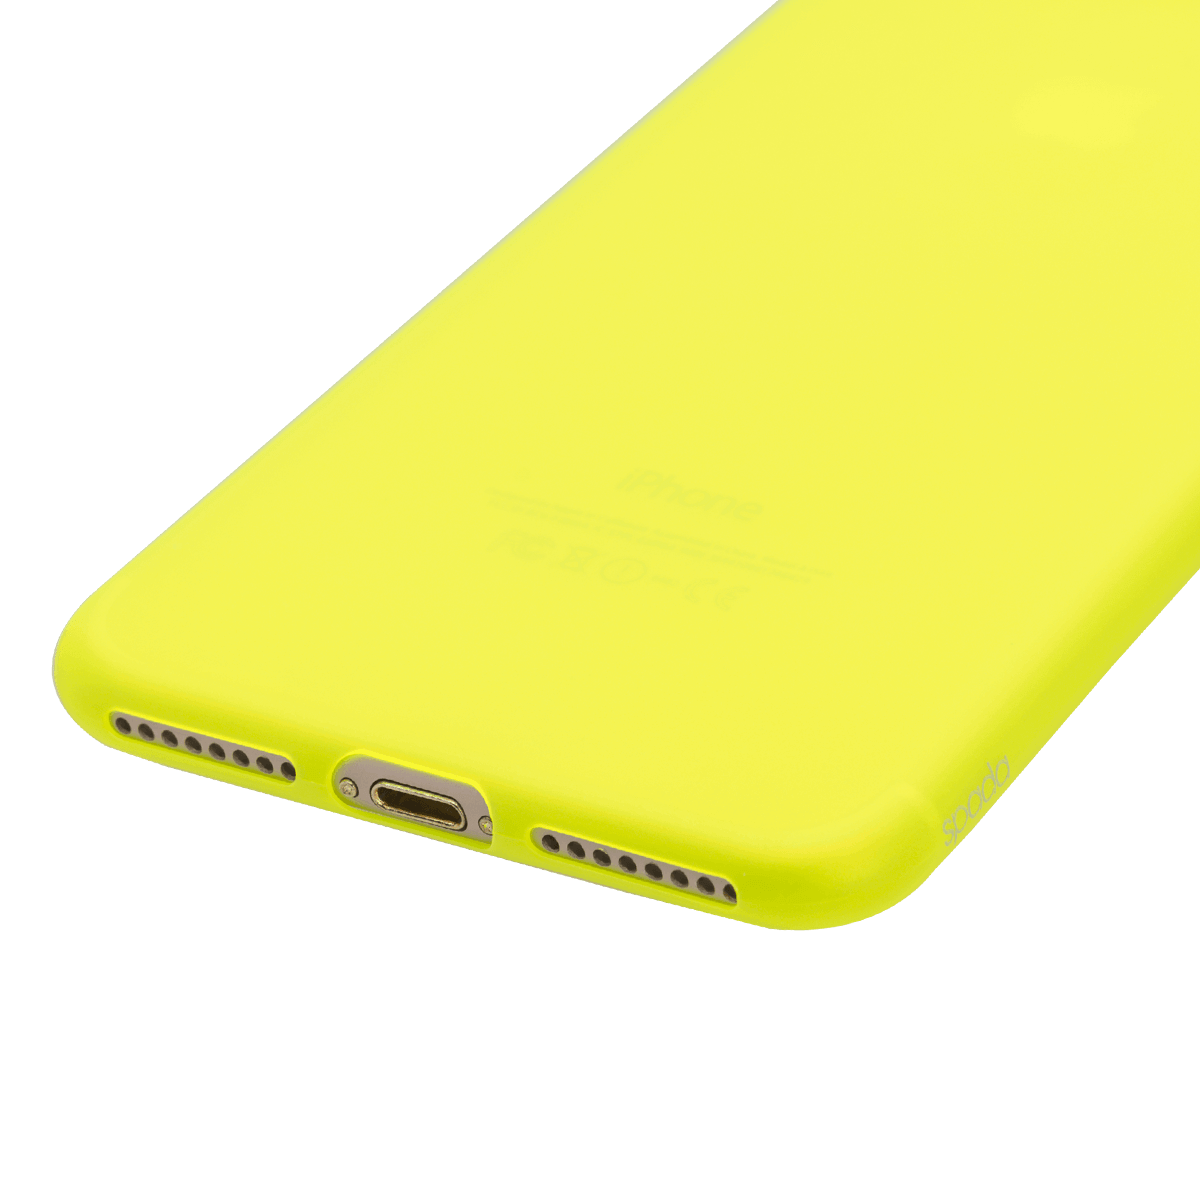 iPhone 7/8 Plus için spada Ultra İnce TPU Limon Sarısı renk Kapak